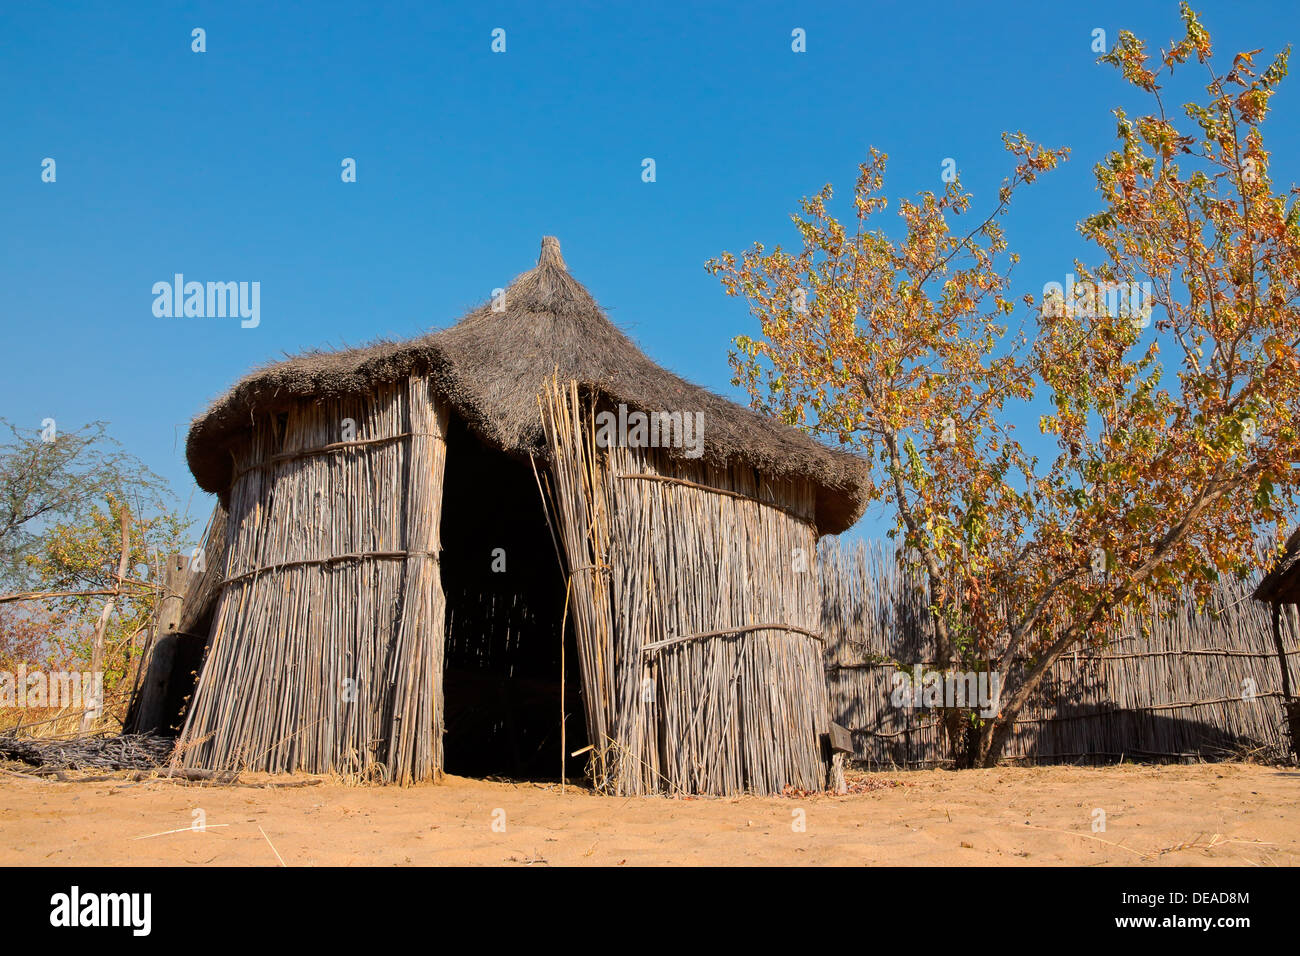 África rural tradicional choza de paja y juncos, la región de Caprivi, Namibia Foto de stock